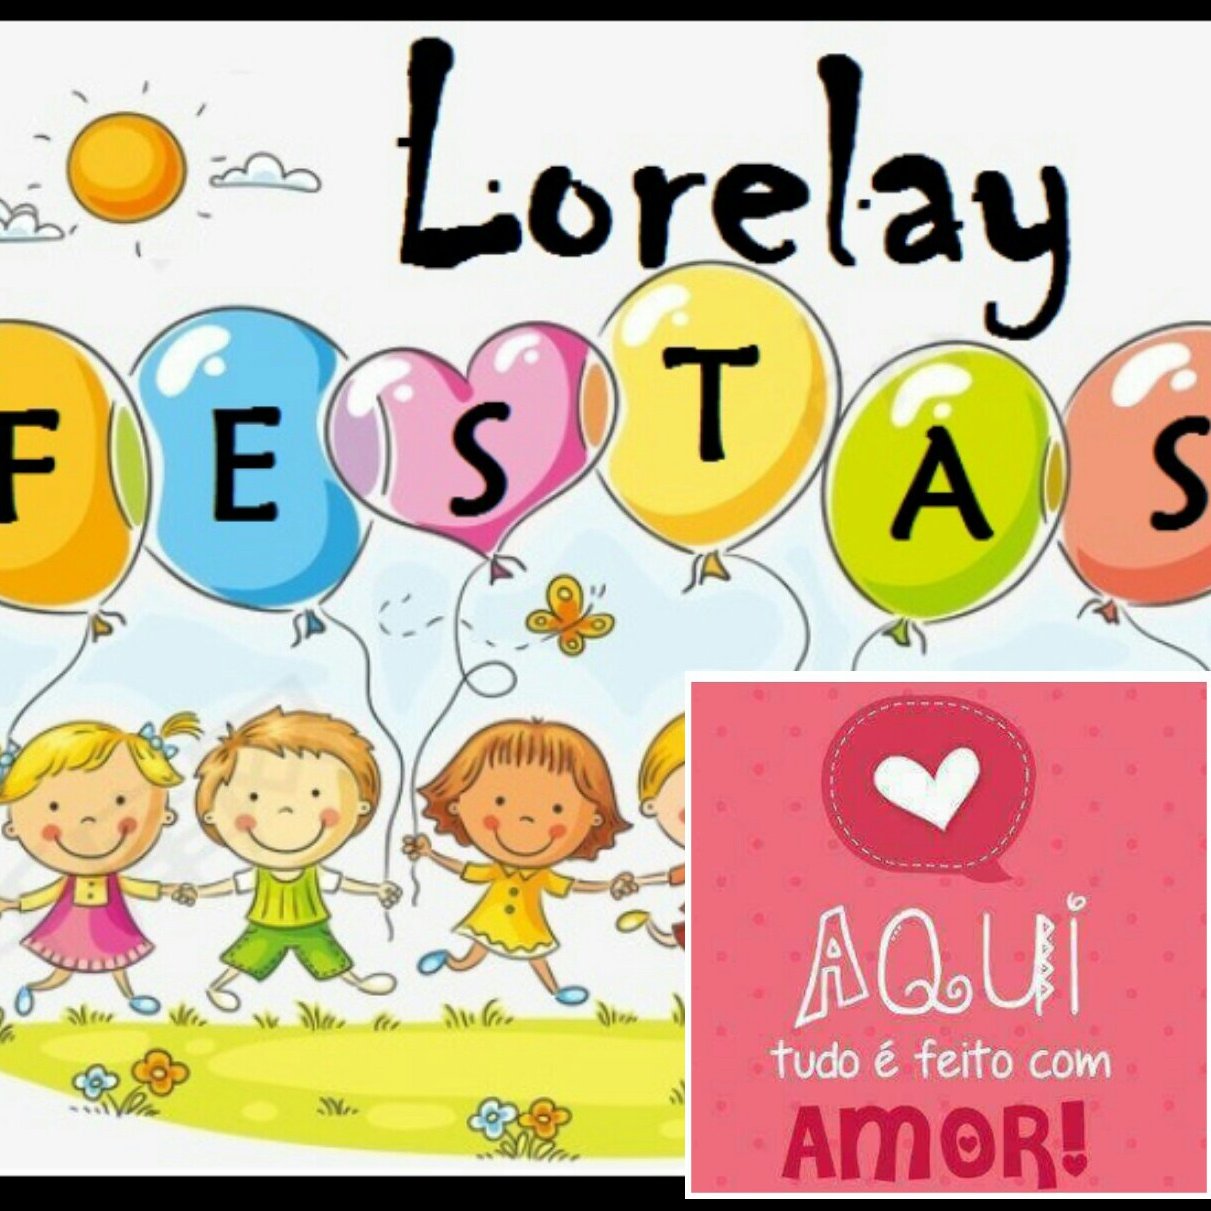 Lorelay Festas